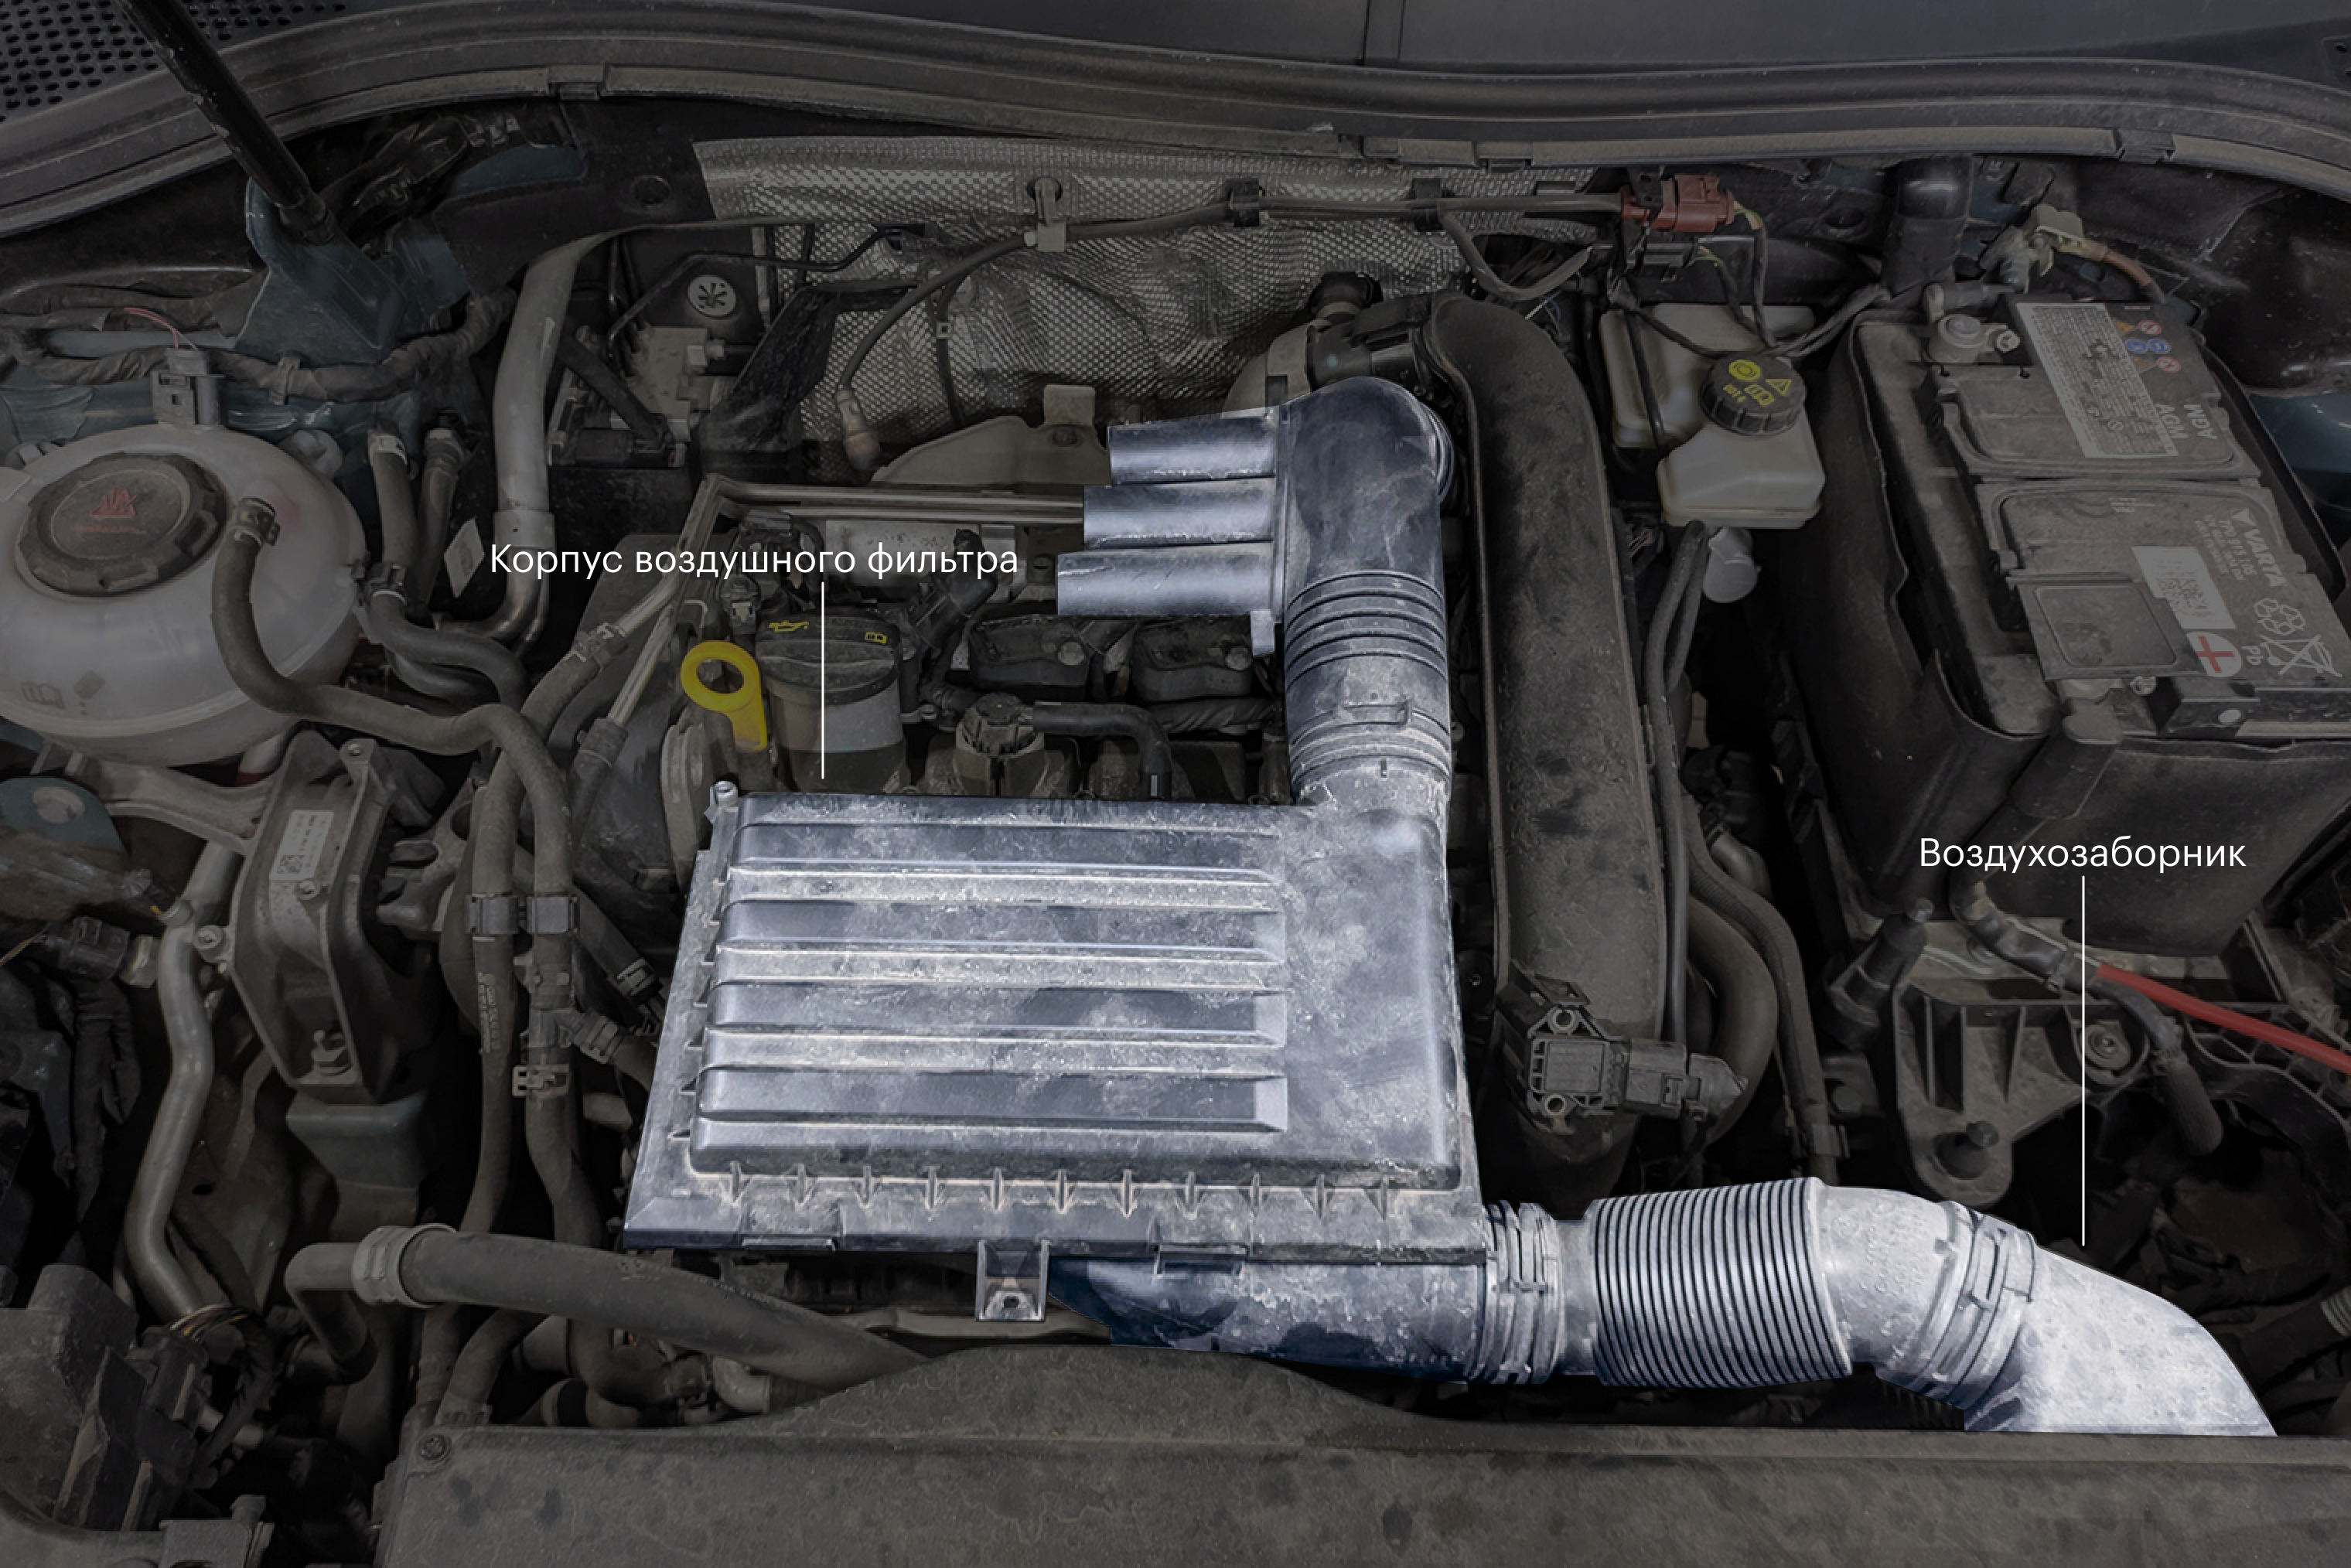 Volkswagen Tiguan 2021 года, двигатель 1.4 TSI. Воздухозаборник — в верхней решетке радиатора, после фильтра воздух идет к турбине. Корпус фильтра закреплен на двигателе